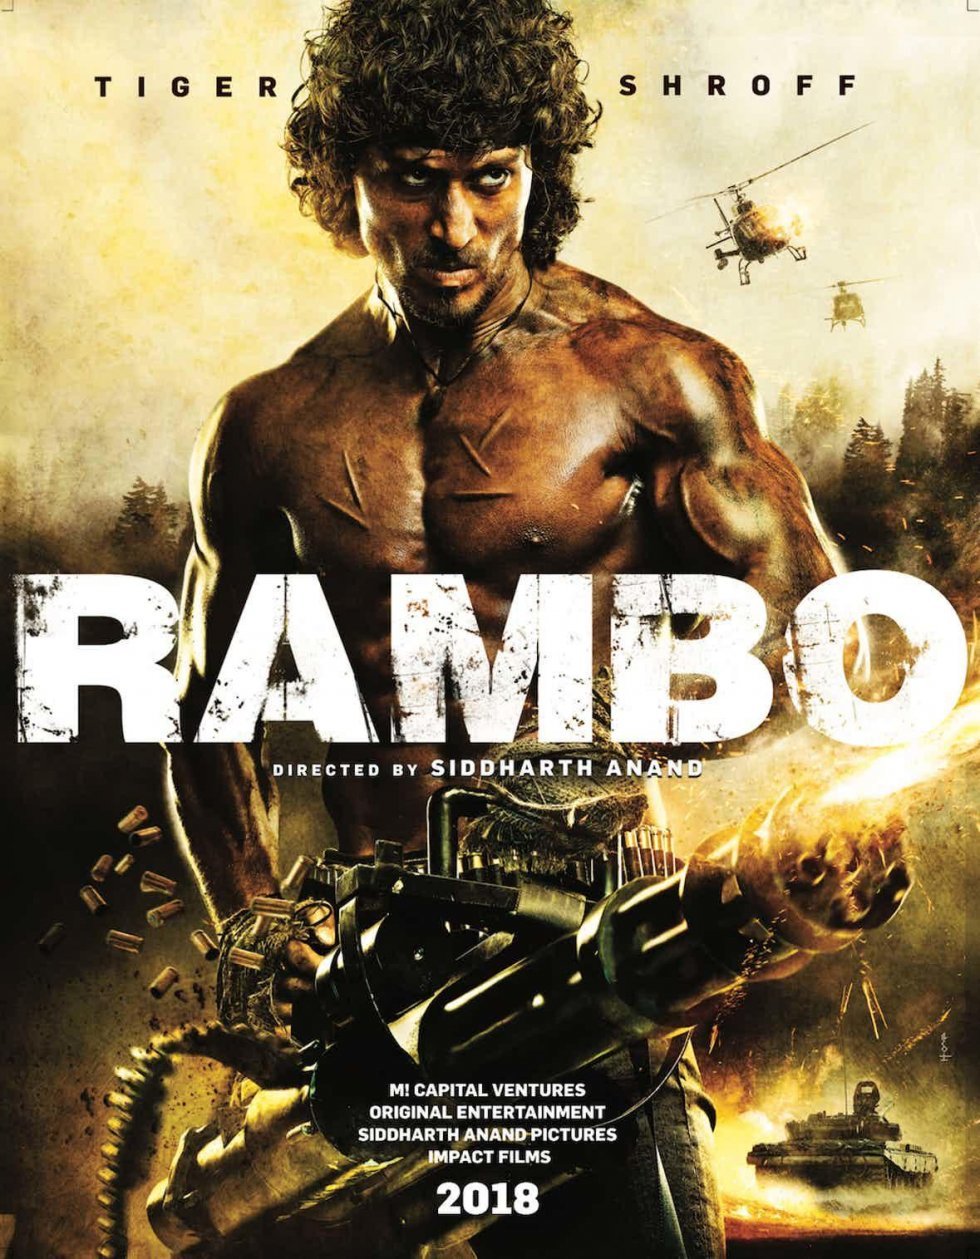 Rambo får uventet remake